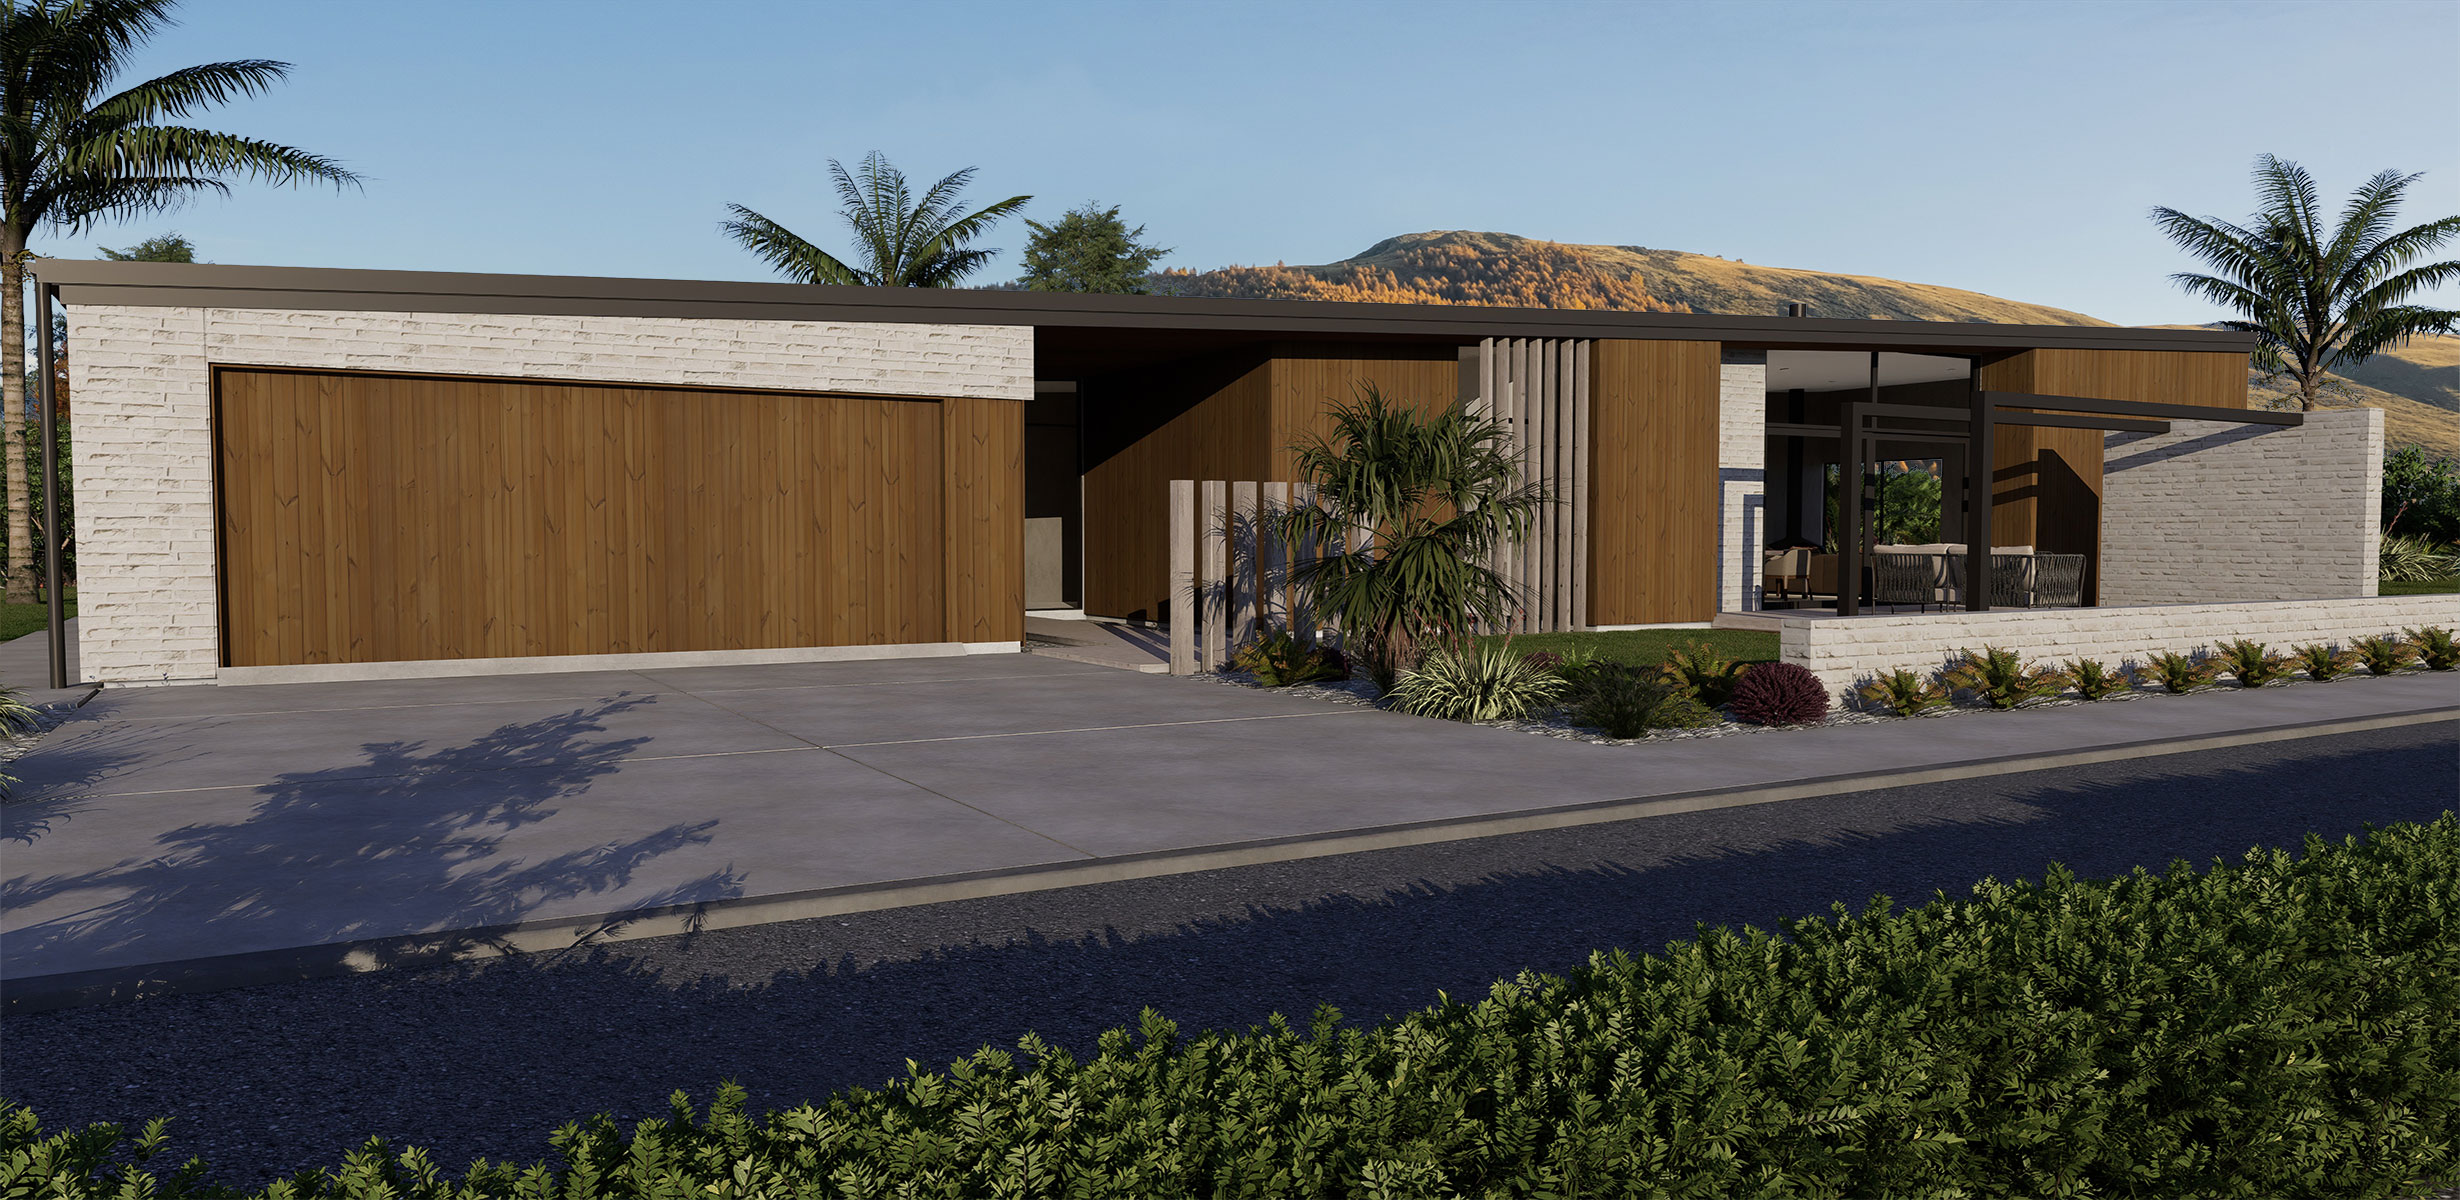 Hallmark Homes Luxury Prestige Series Bremner Bay Front View House Plan Christchurch NZ